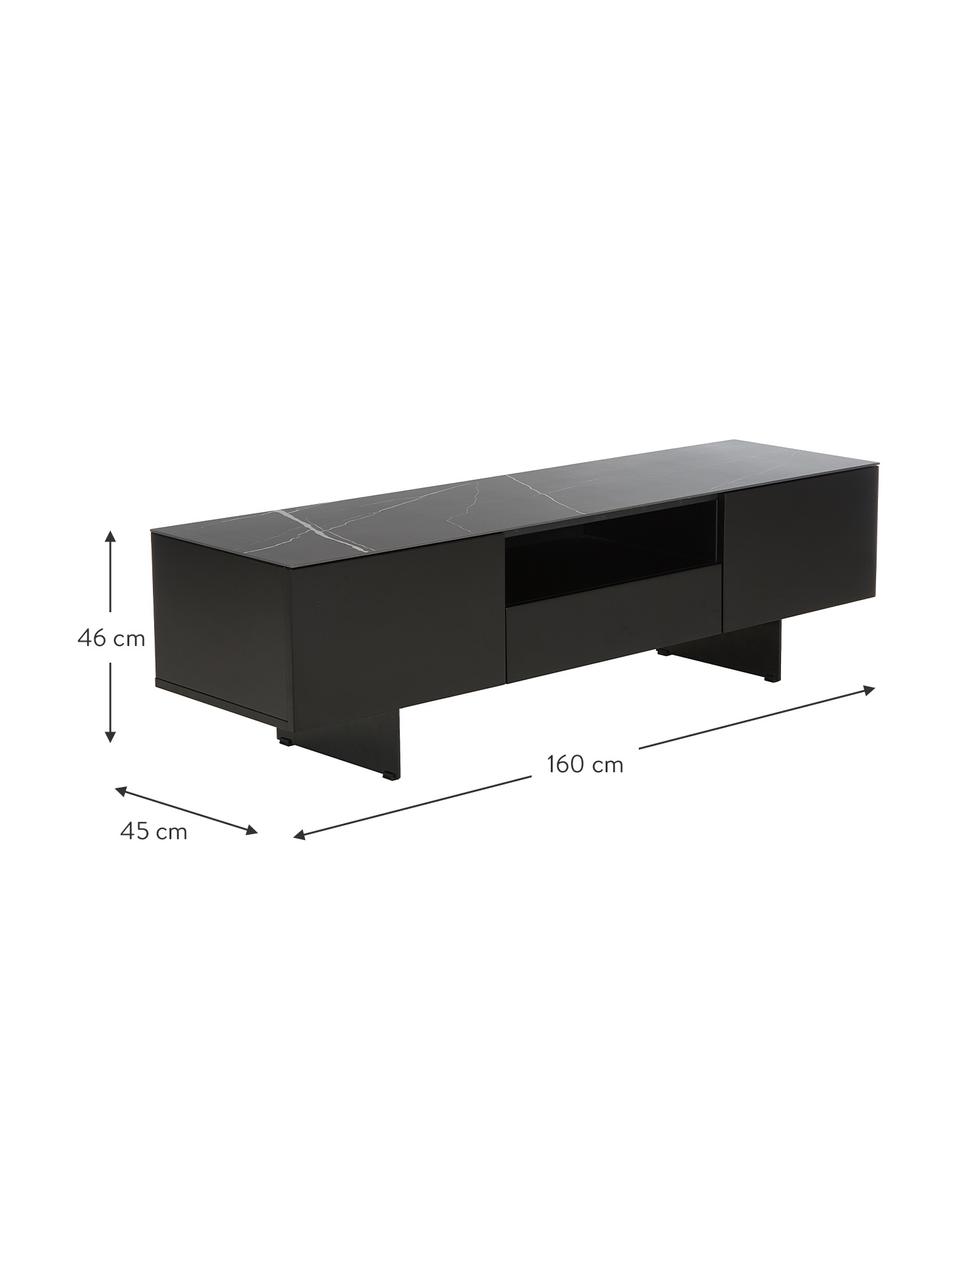 Tv-meubel Fiona met oppervlak in marmerlook, Frame: gelakt middeldichte vezep, Poten: gepoedercoat metaal, Plank: keramiek, Frame: mat zwart. Poten: mat zwart. Plank: zwart, gemarmerd, B 160 x H 46 cm